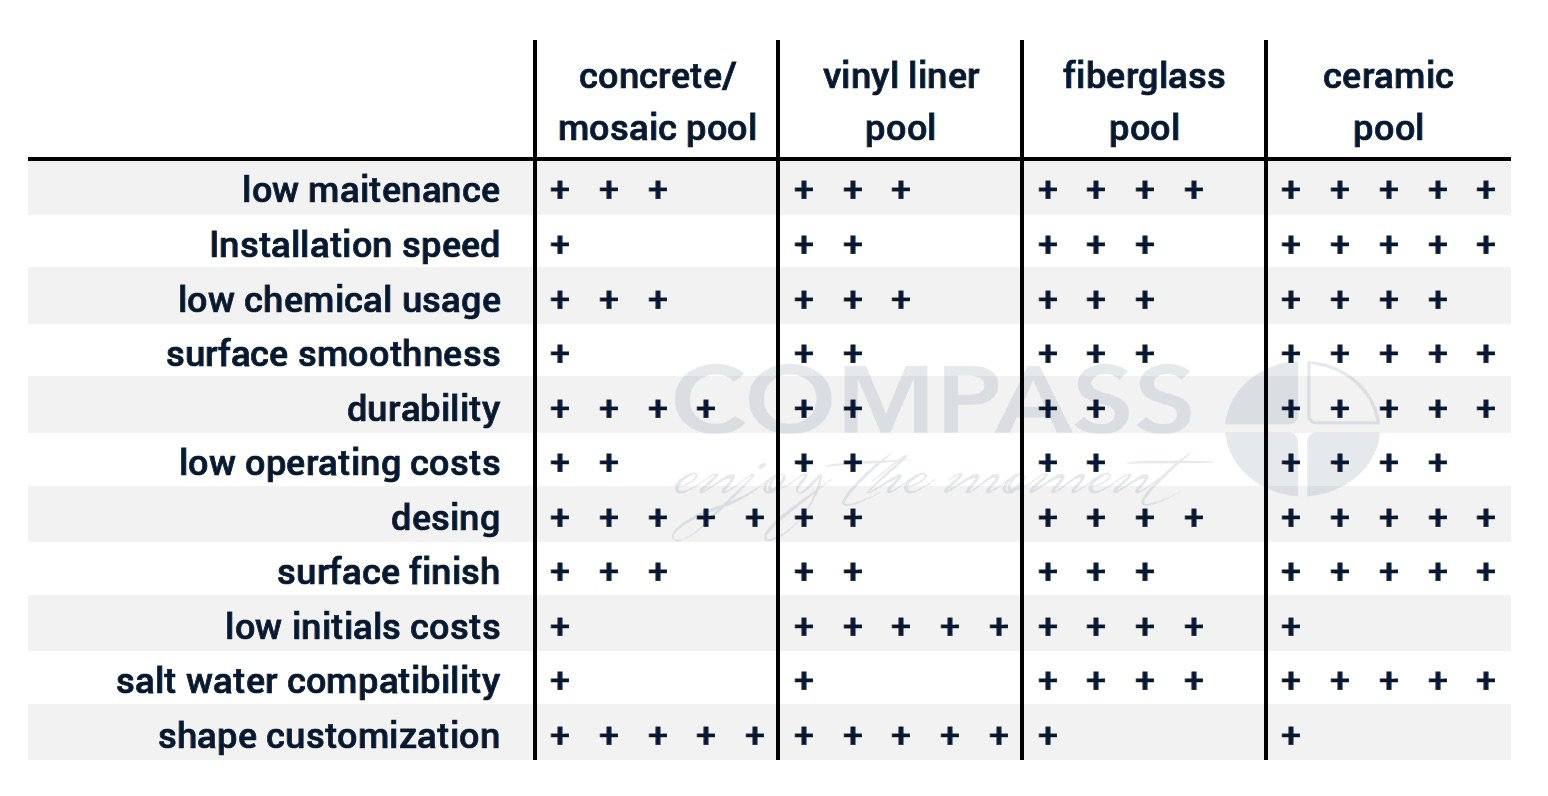 pool materials, ceramic pools, concrete pools, vinyl liner pools, fiberglass pools